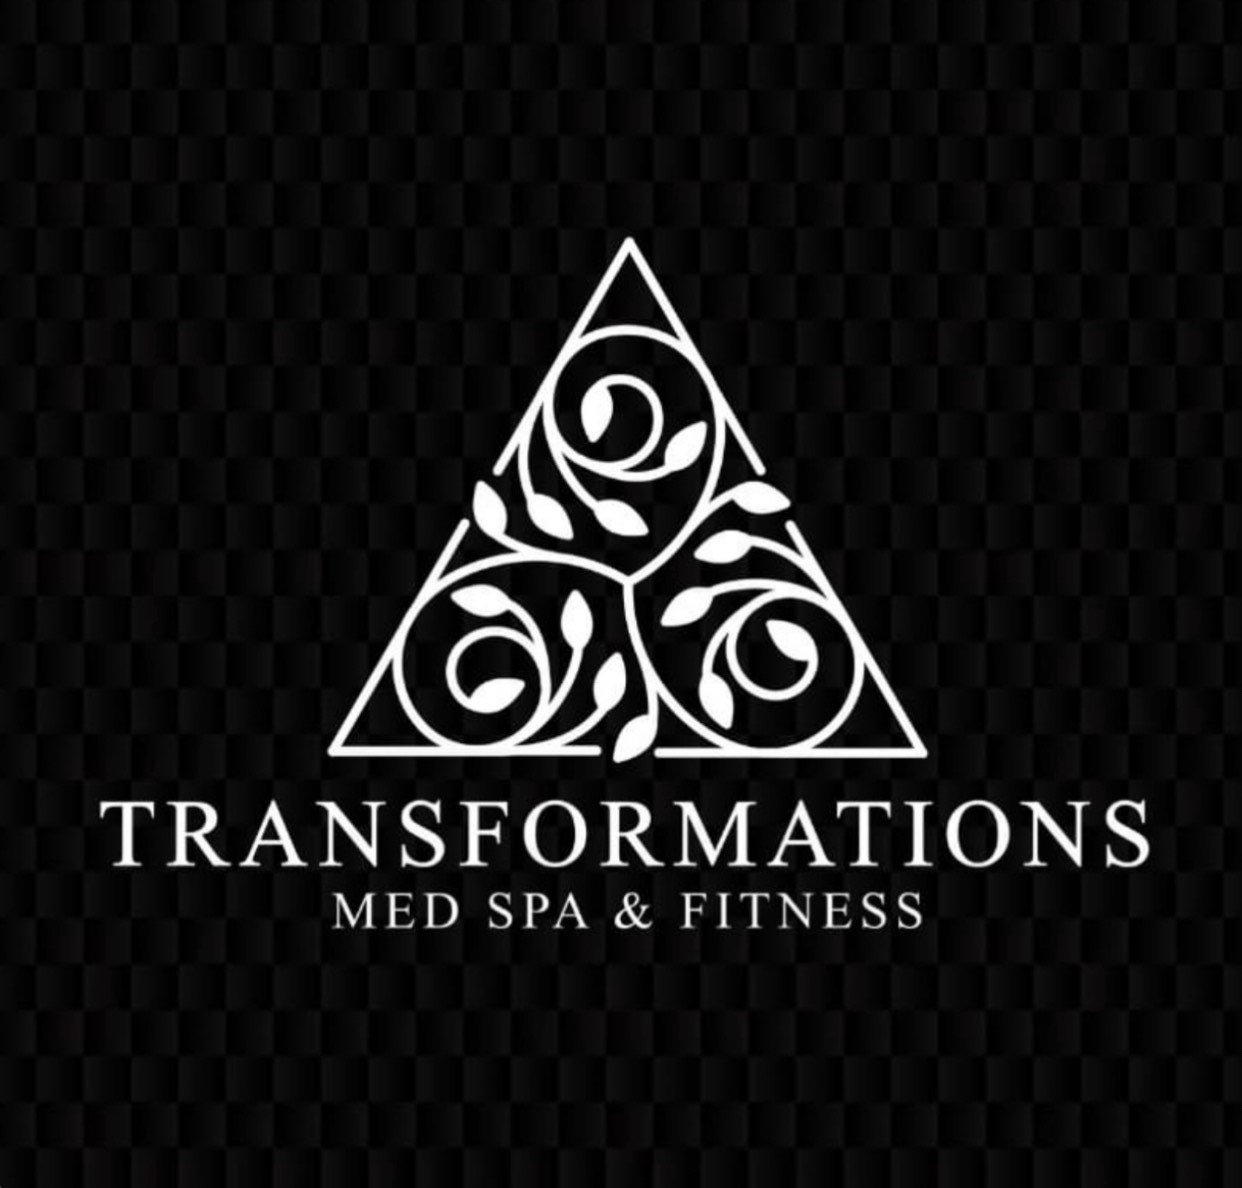 Transformations Med Spa